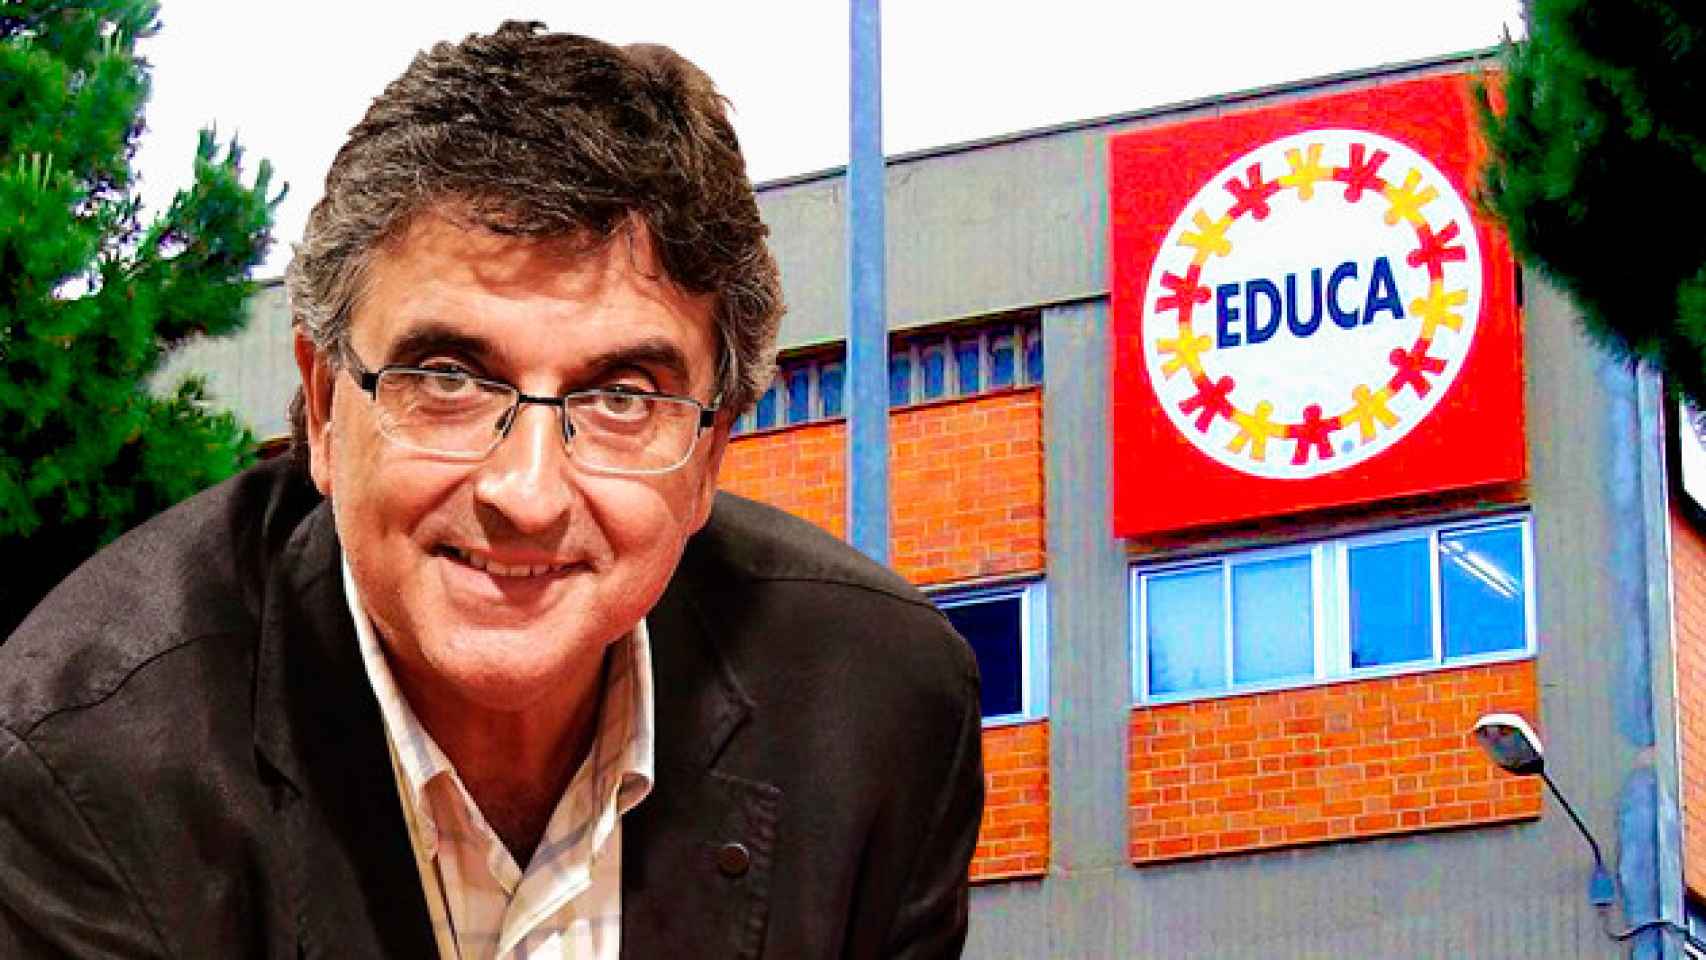 Florenci Verbón, CEO de Educa Borras / CG